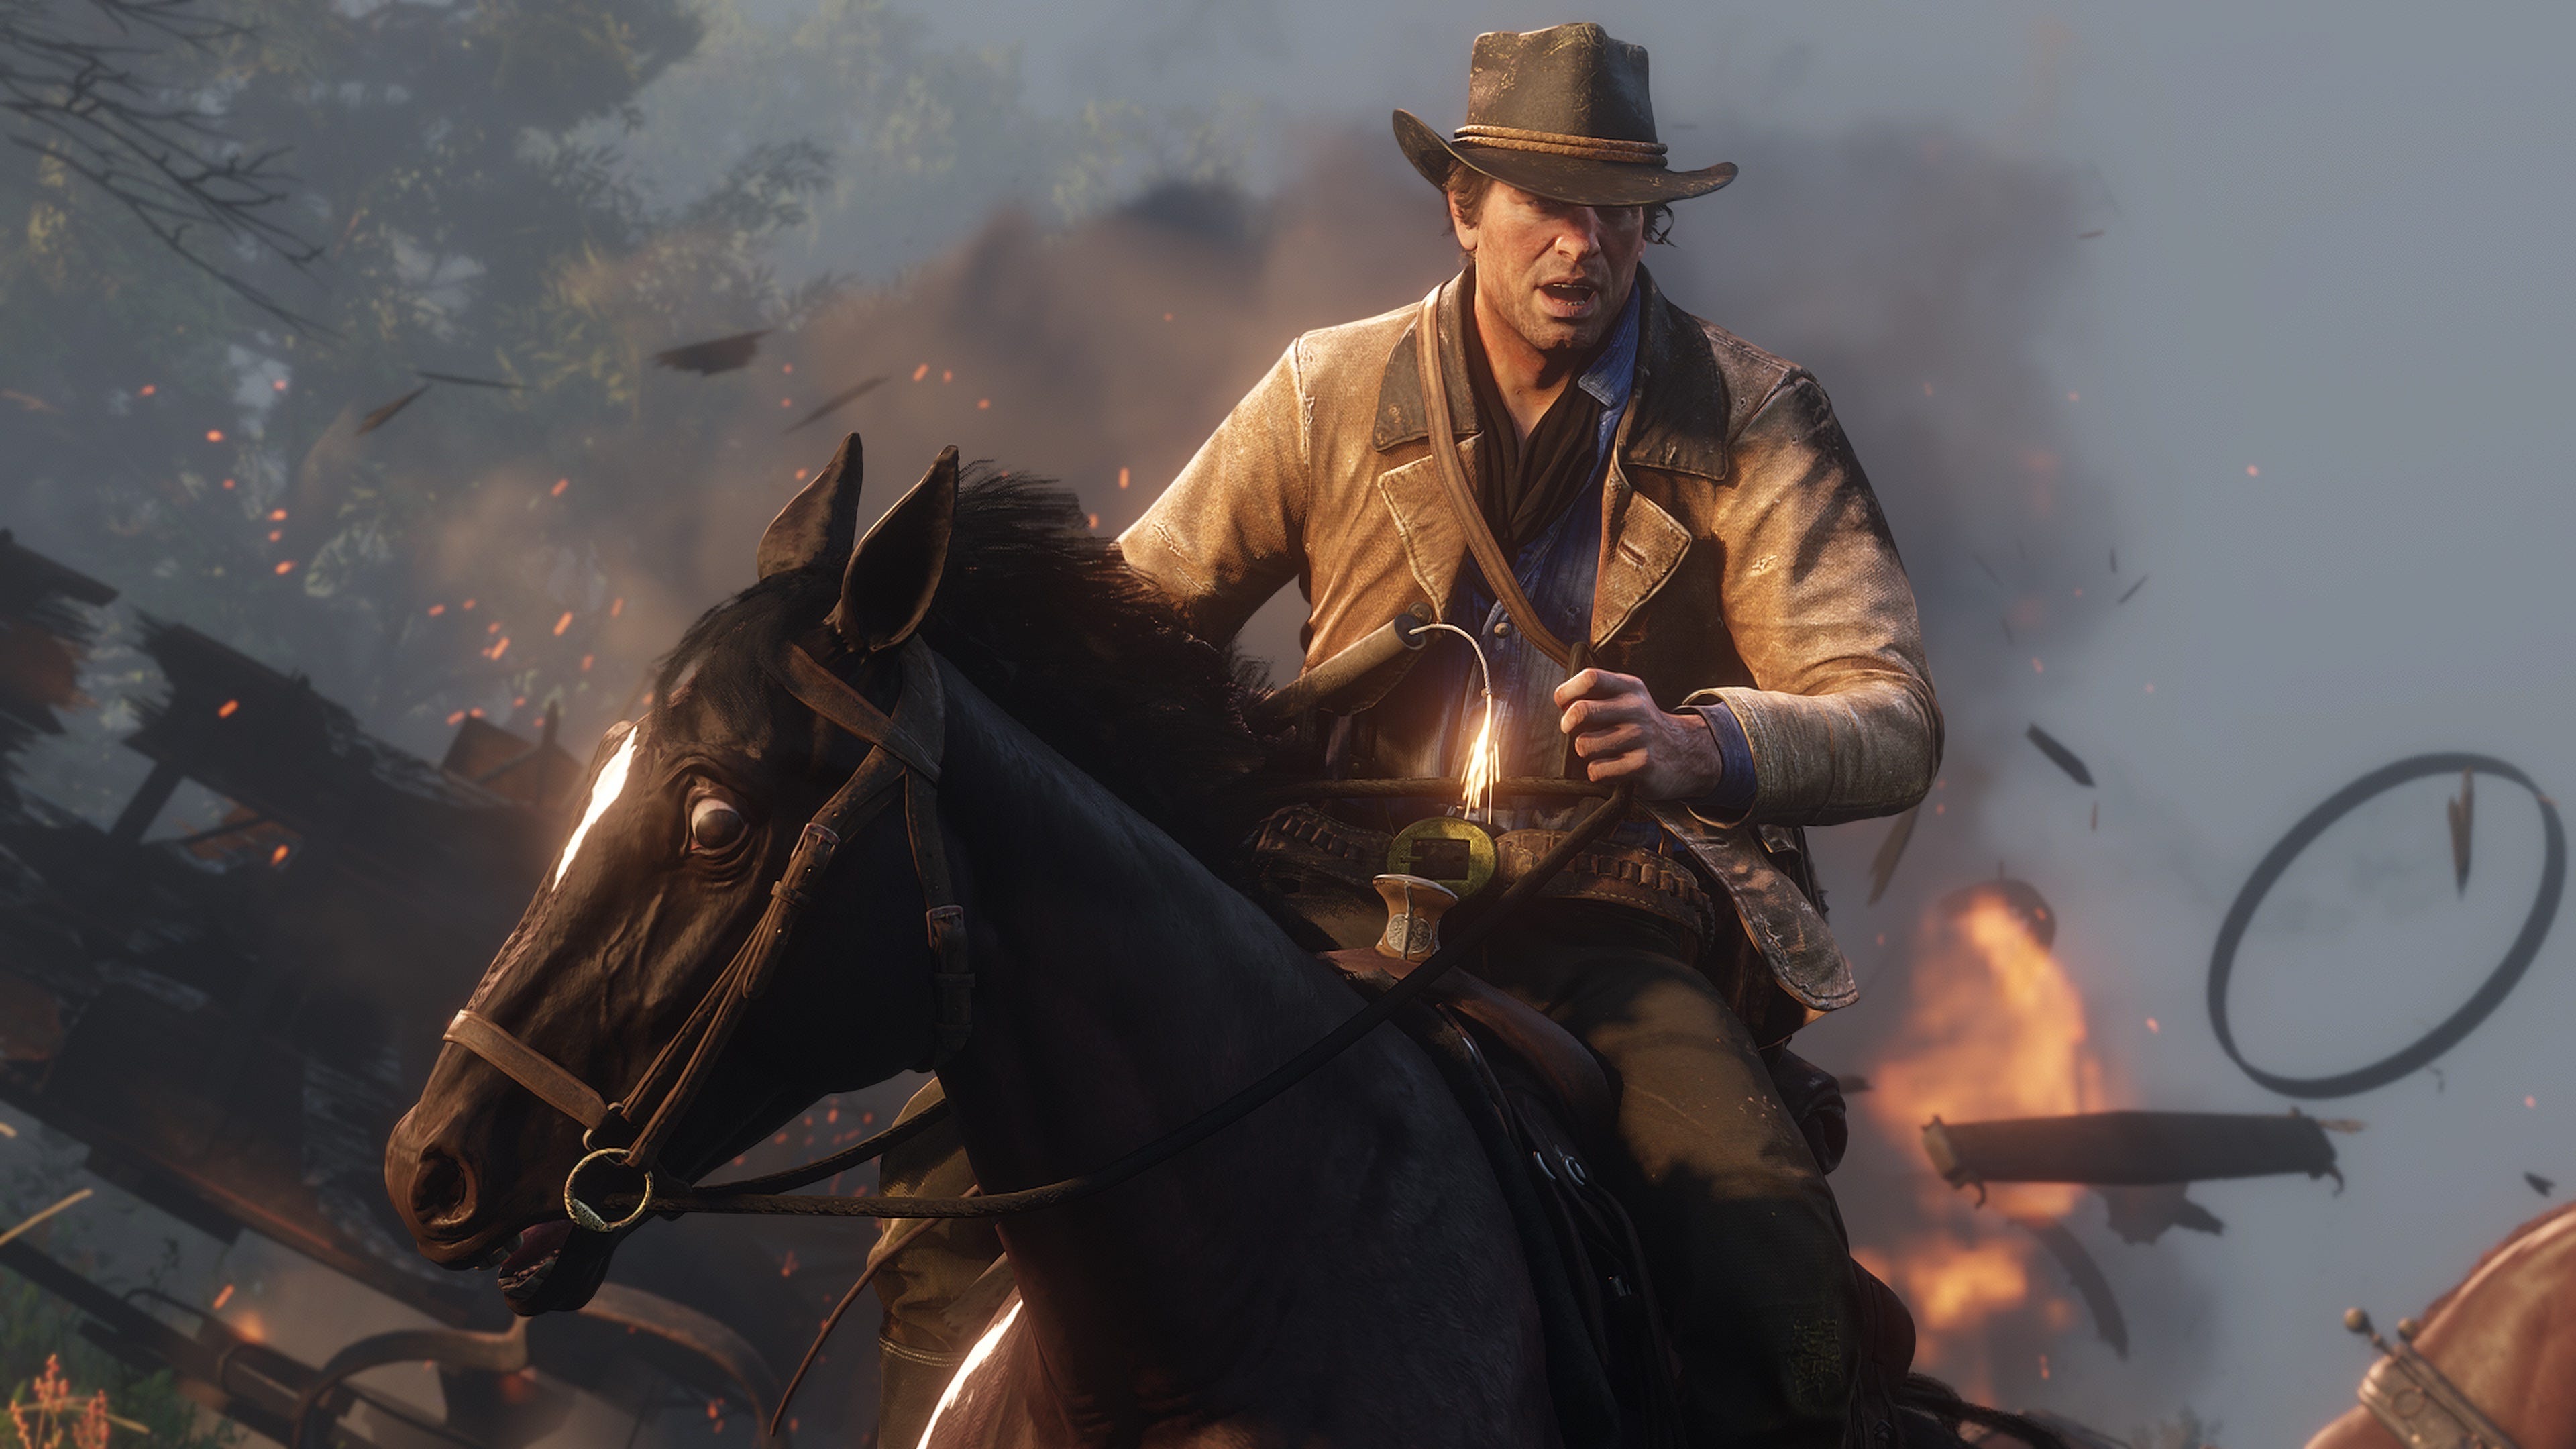 Dead Redemption 2 $725 million debut for Rockstar Games